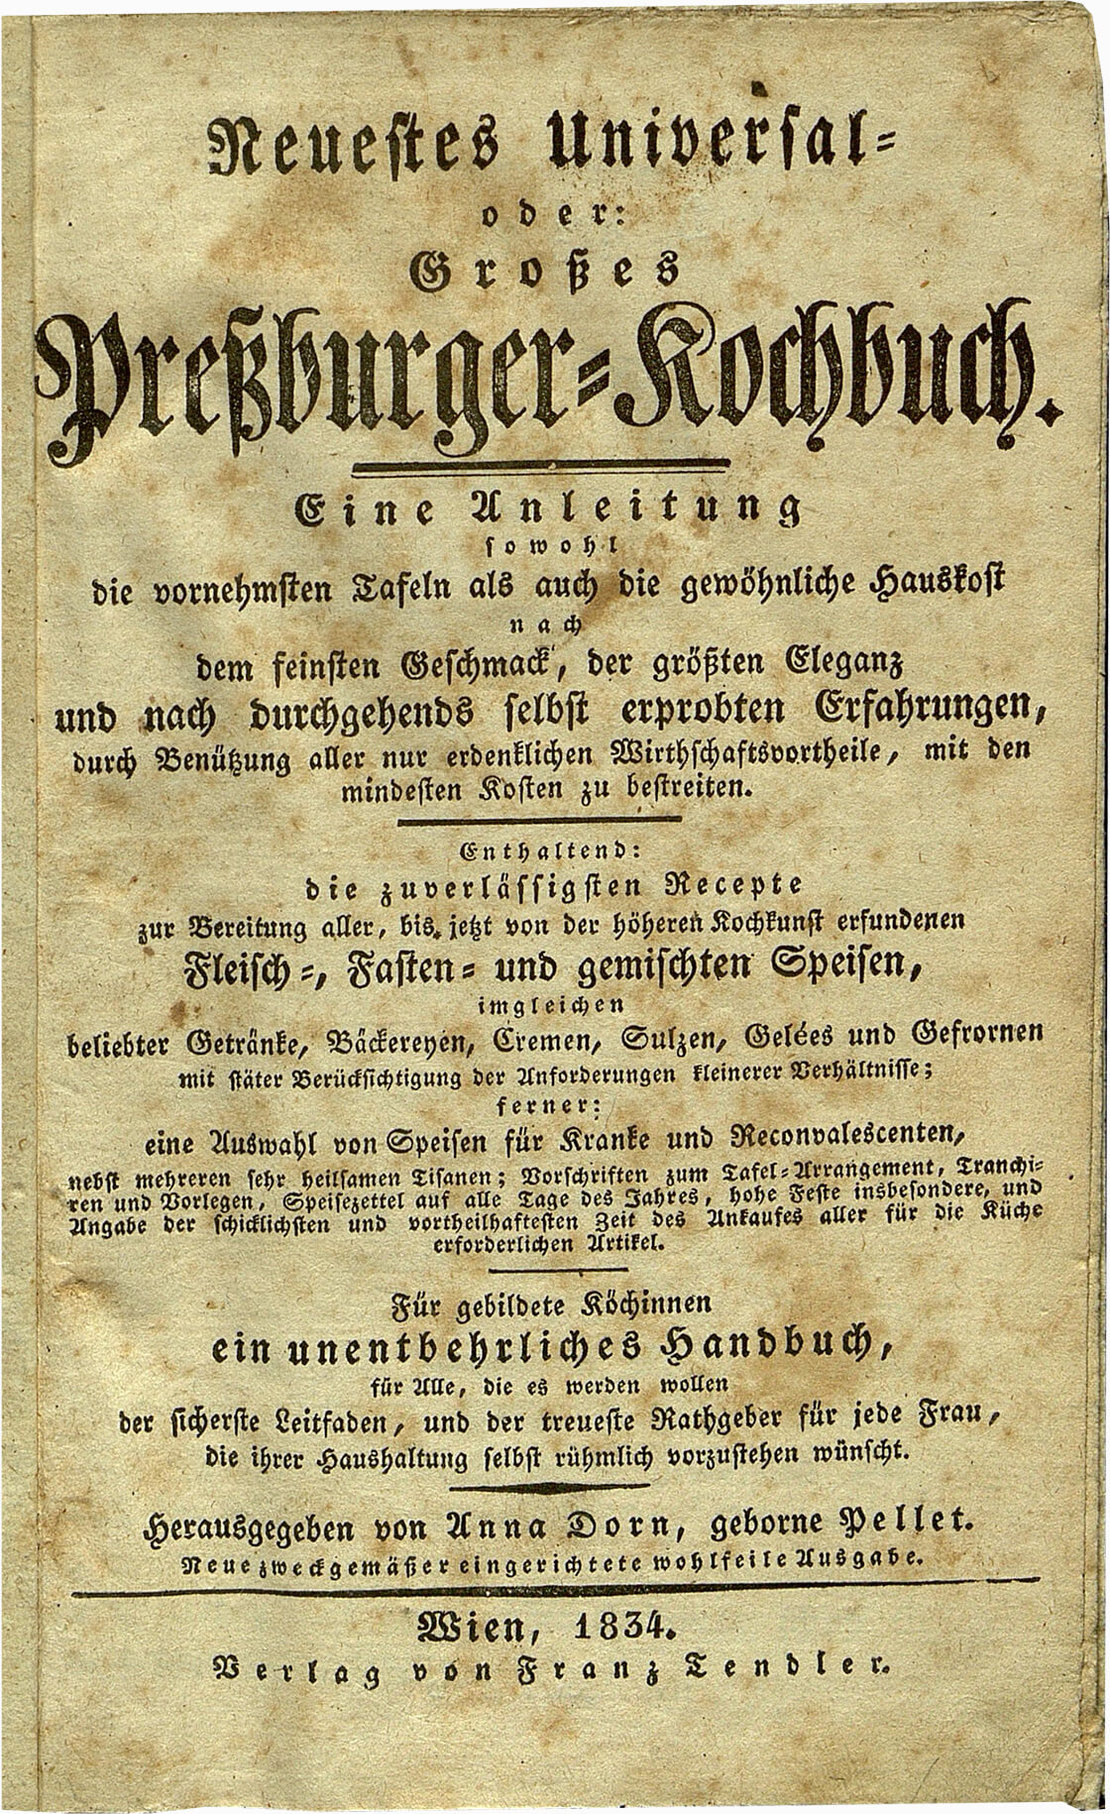 Neuestes Universal- oder: Großes Preßburger-Kochbuch von Anna Dorn, 1834, Verlag Franz Tendler, Wienbibliothek im Rathaus 